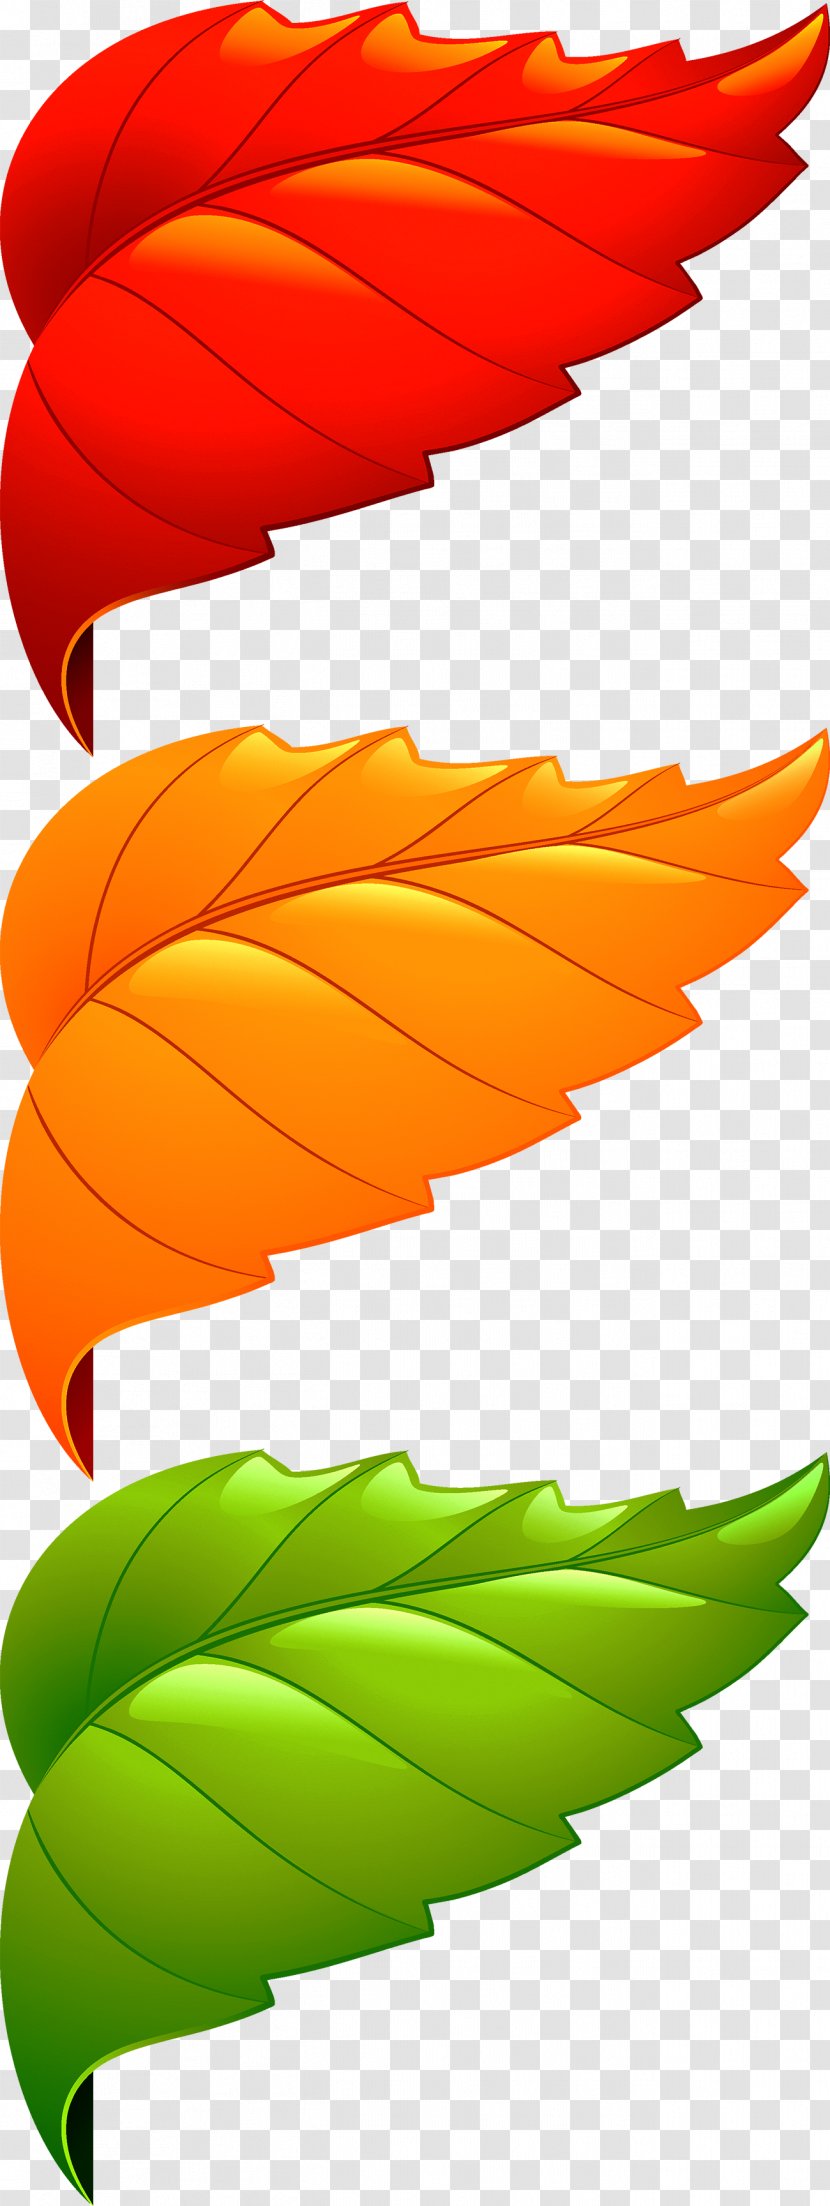 Maple Leaf Adobe Illustrator - Orange - Corner Decorative Leaves Transparent PNG